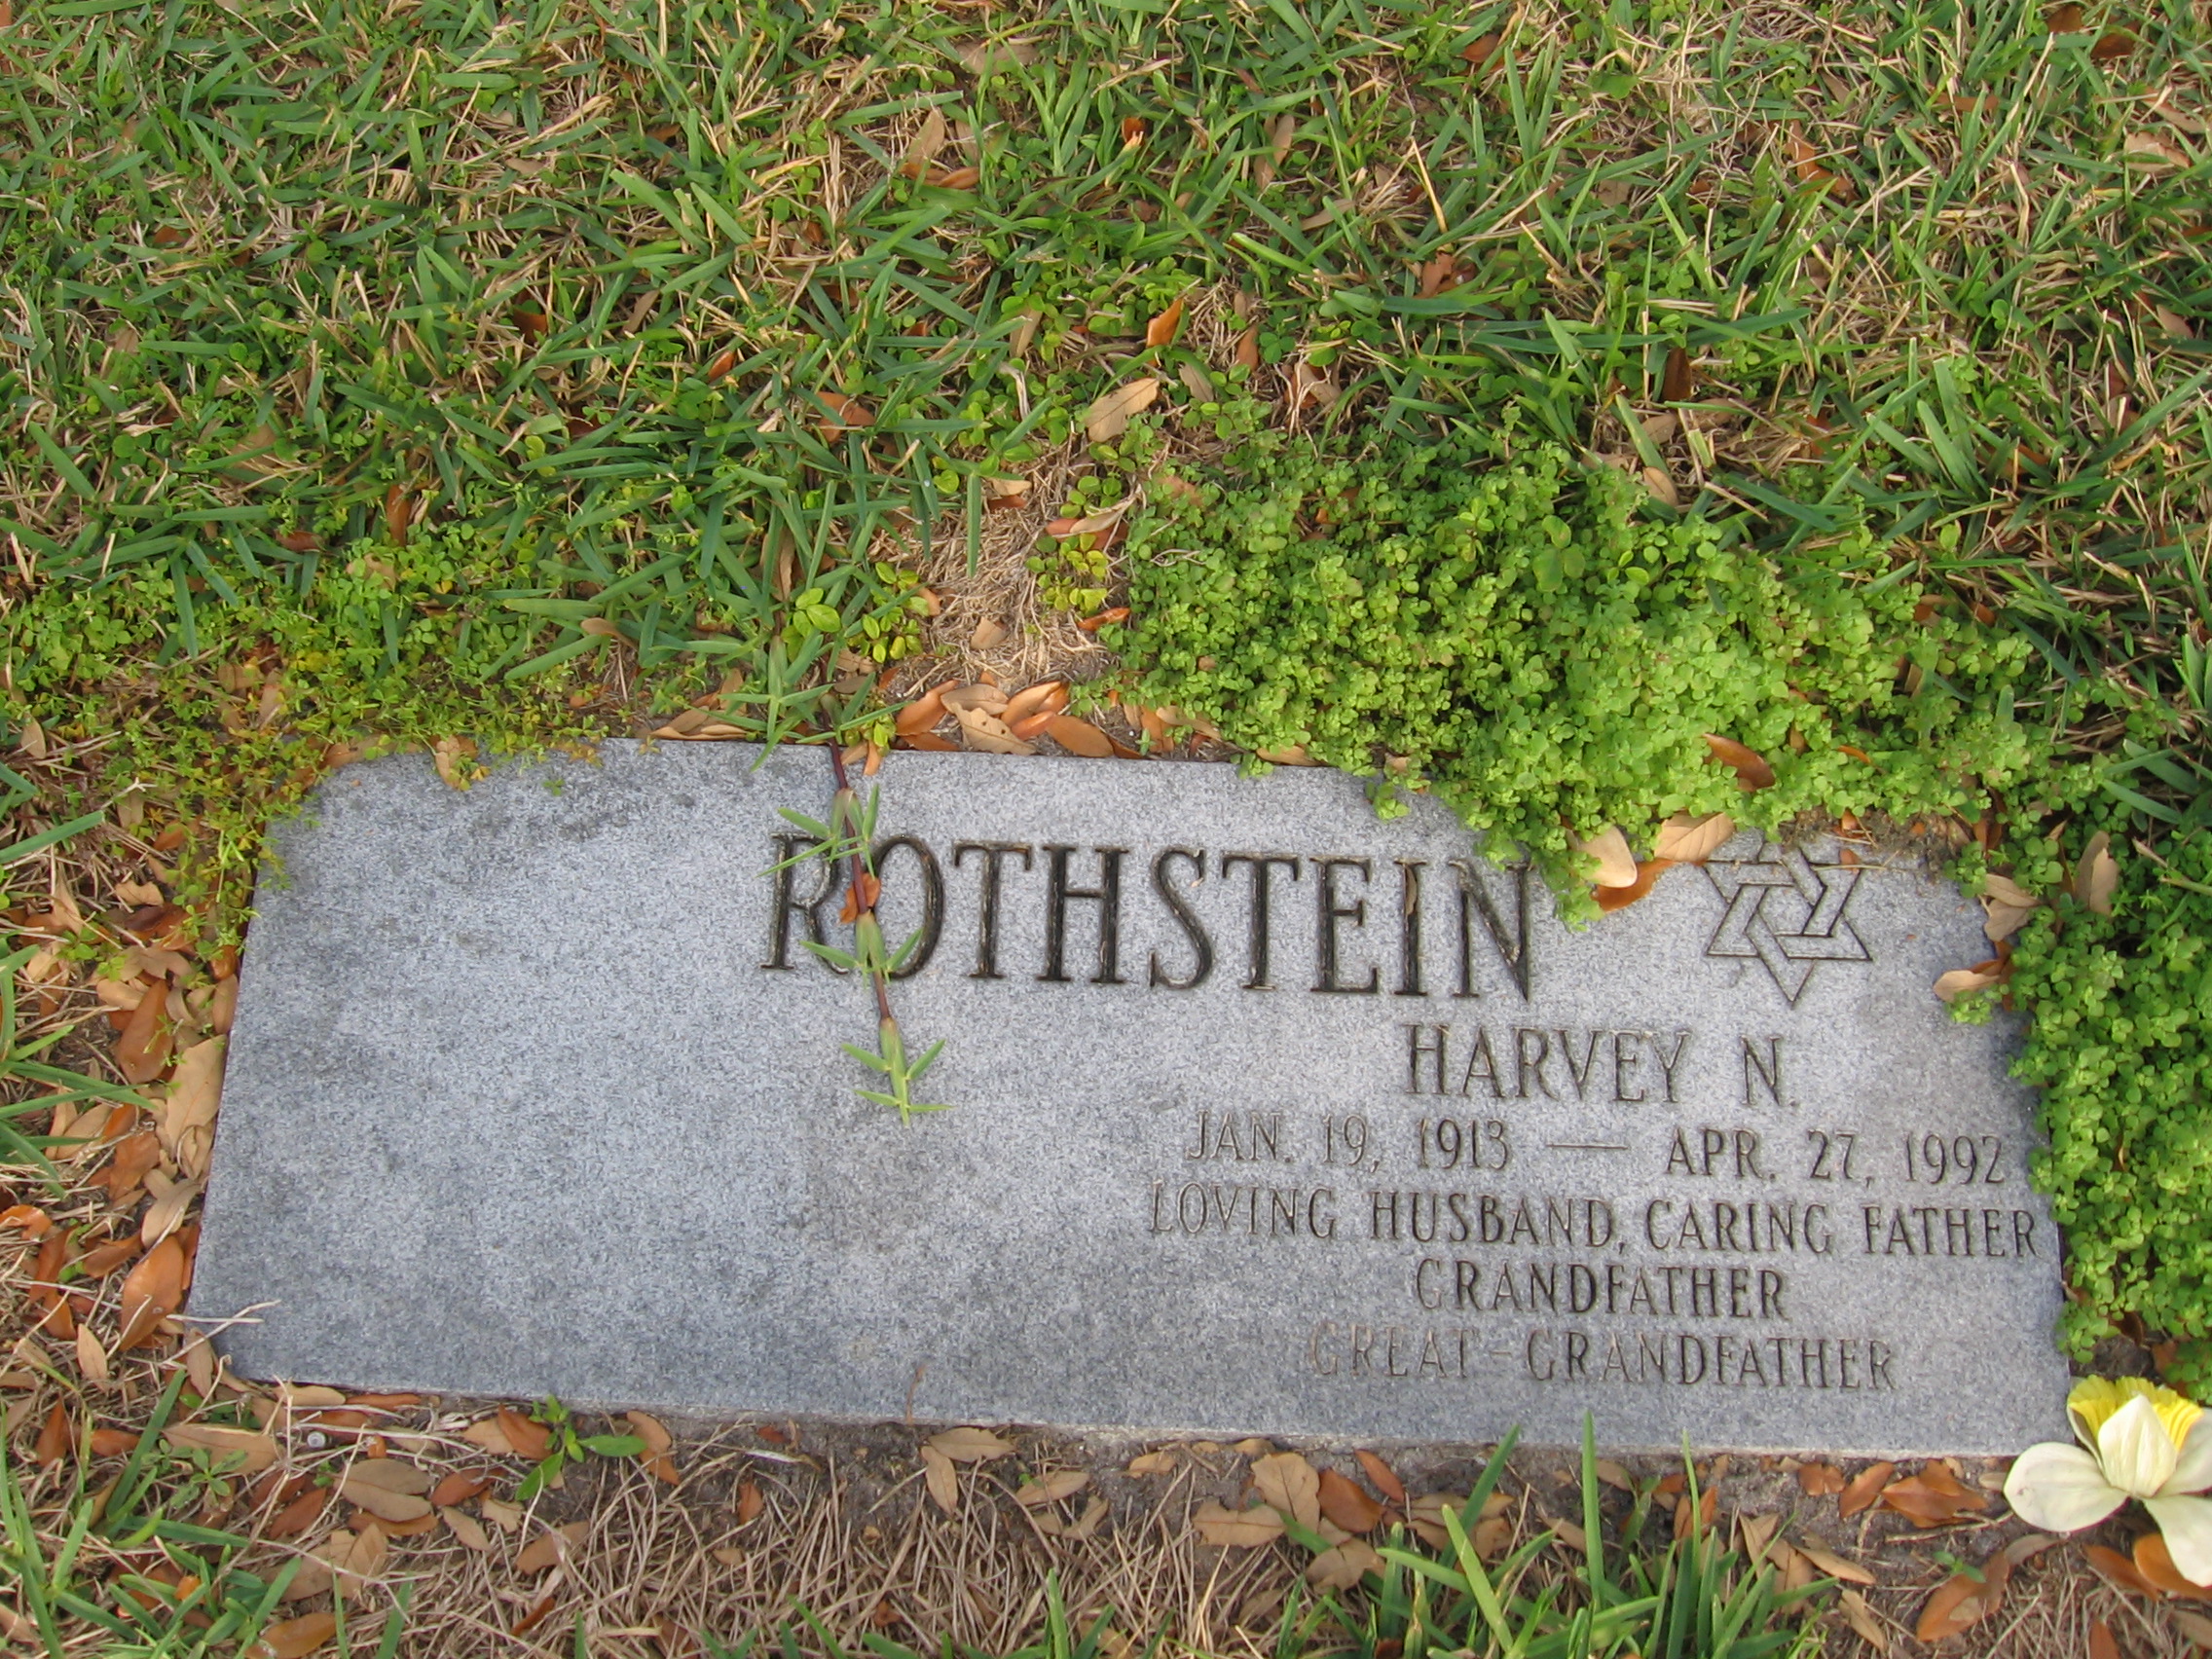 Harvey N Rothstein